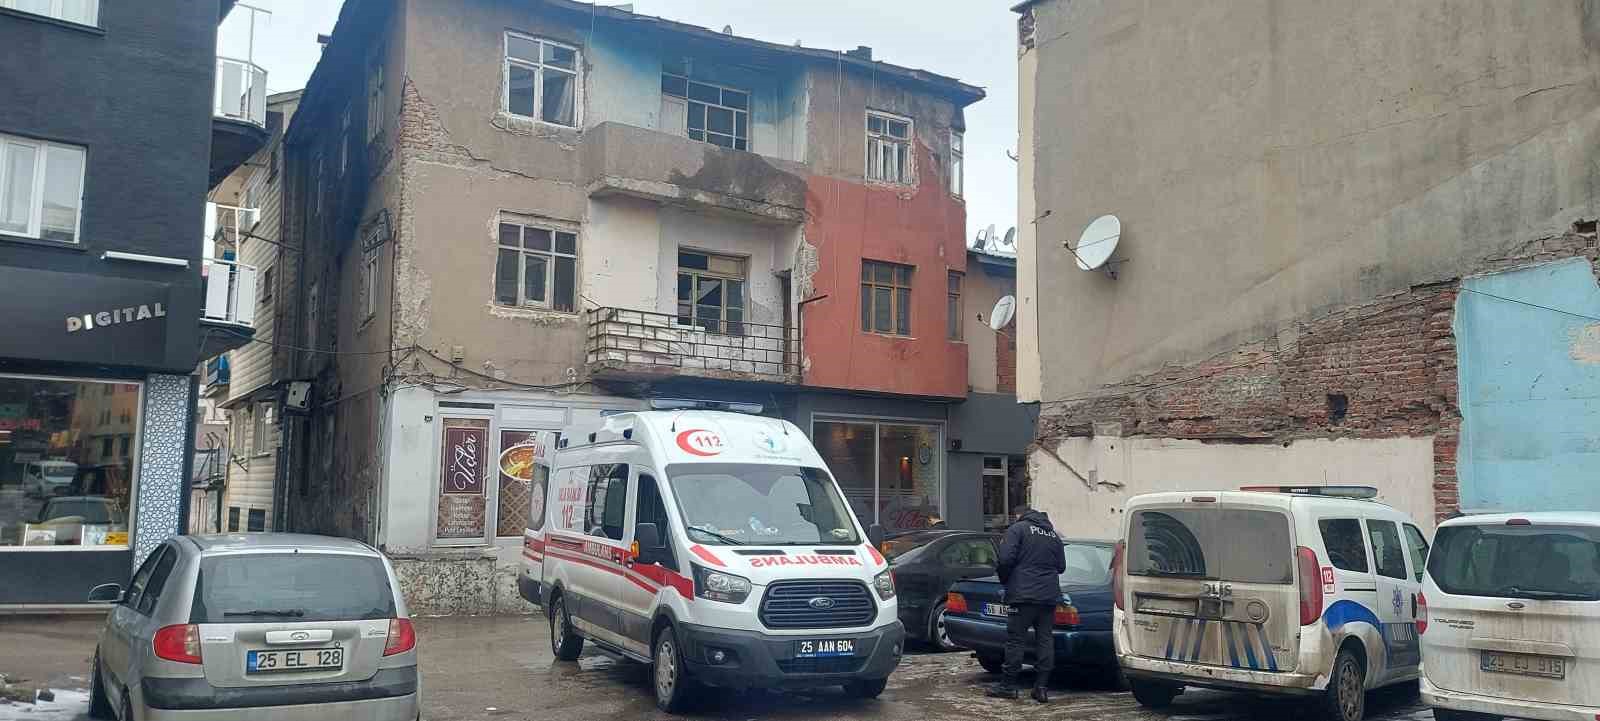 Erzurum’da yaşlı adam evinde ölü bulundu